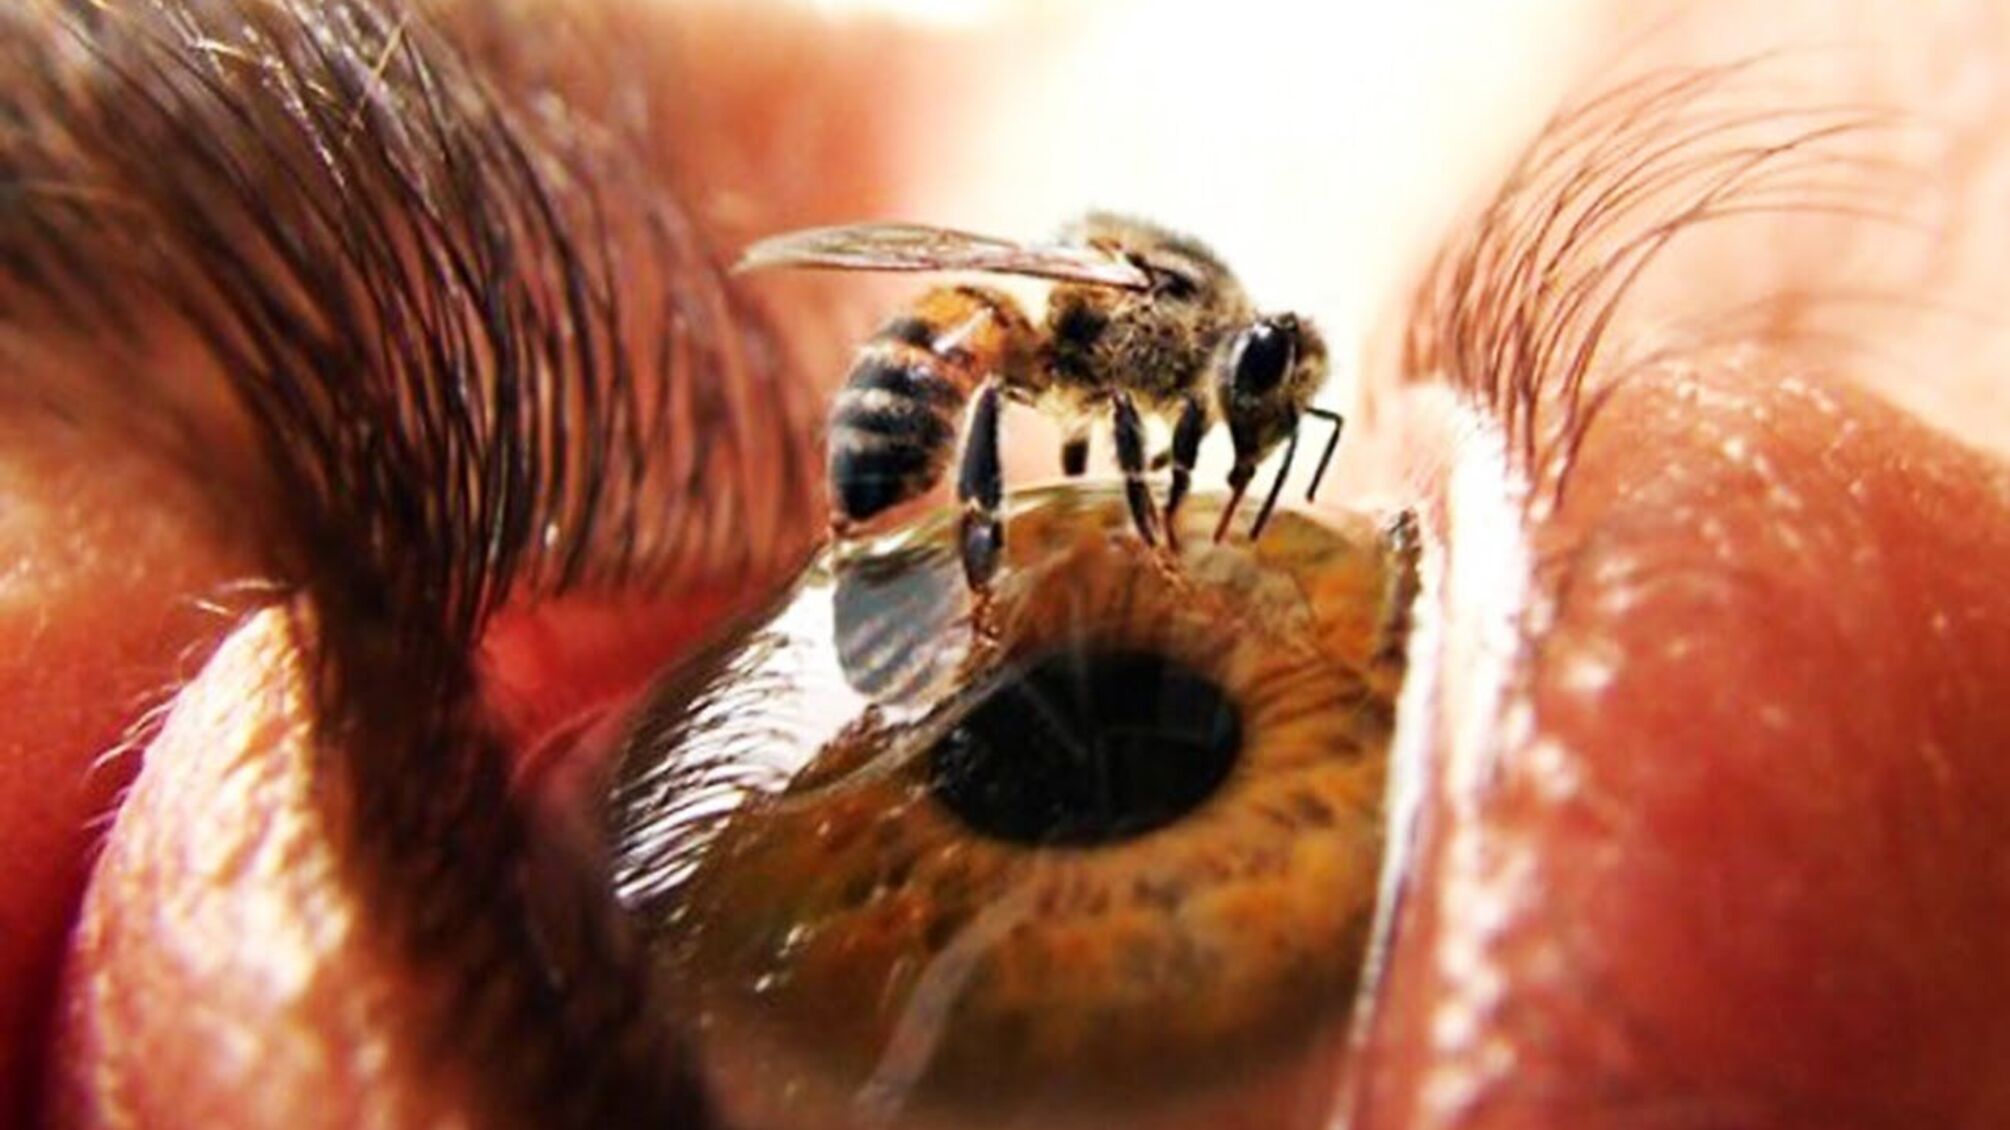 Їли сльози: на Тайвані в оці жінки знайшли чотири бджоли